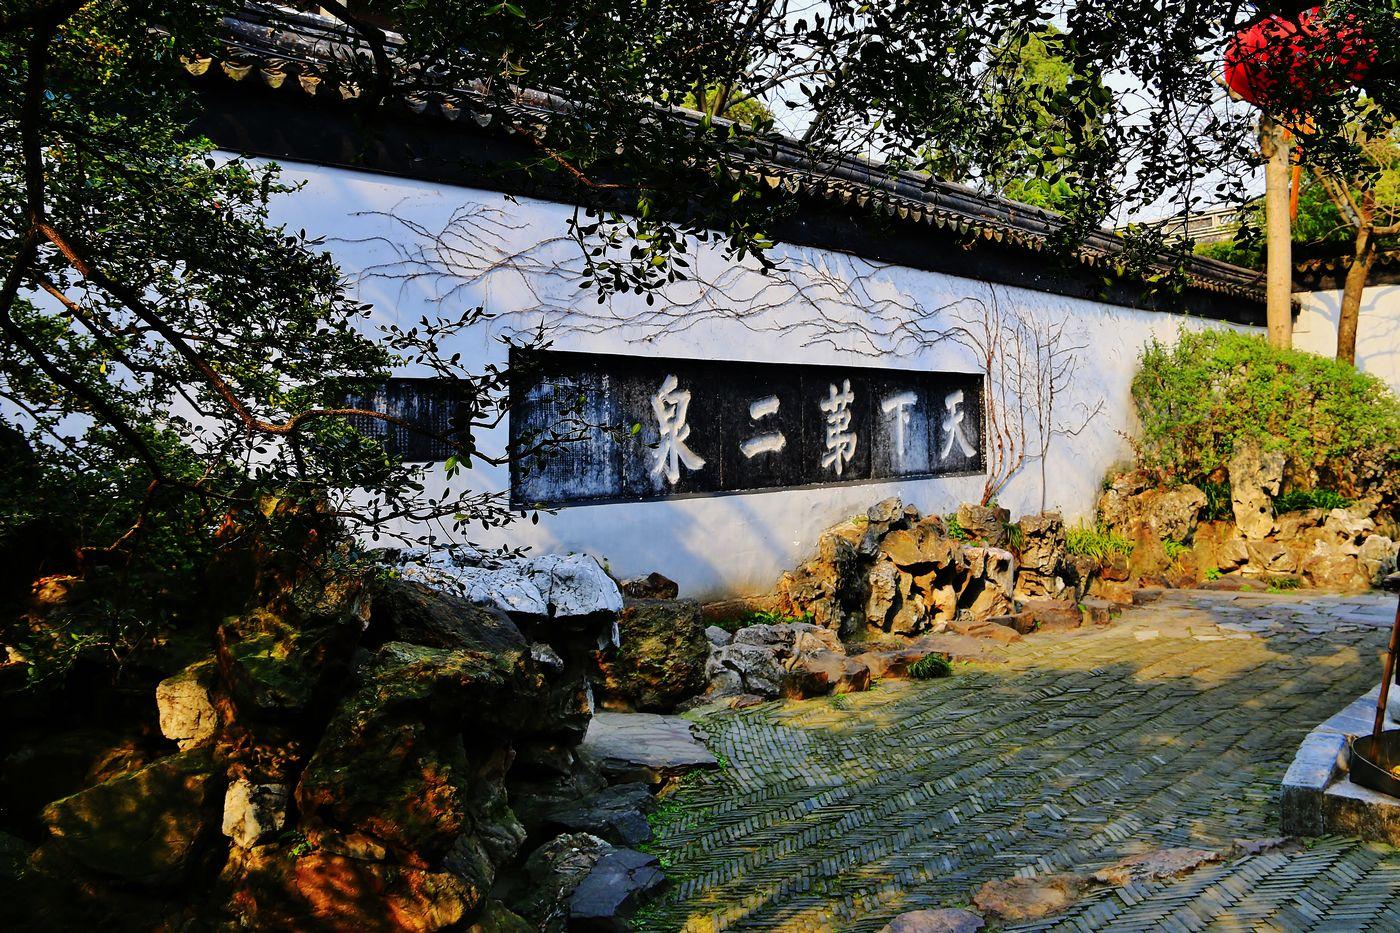 天下第二泉是锡惠园林文物名胜区内最为著名的景点之一,是江苏省文物